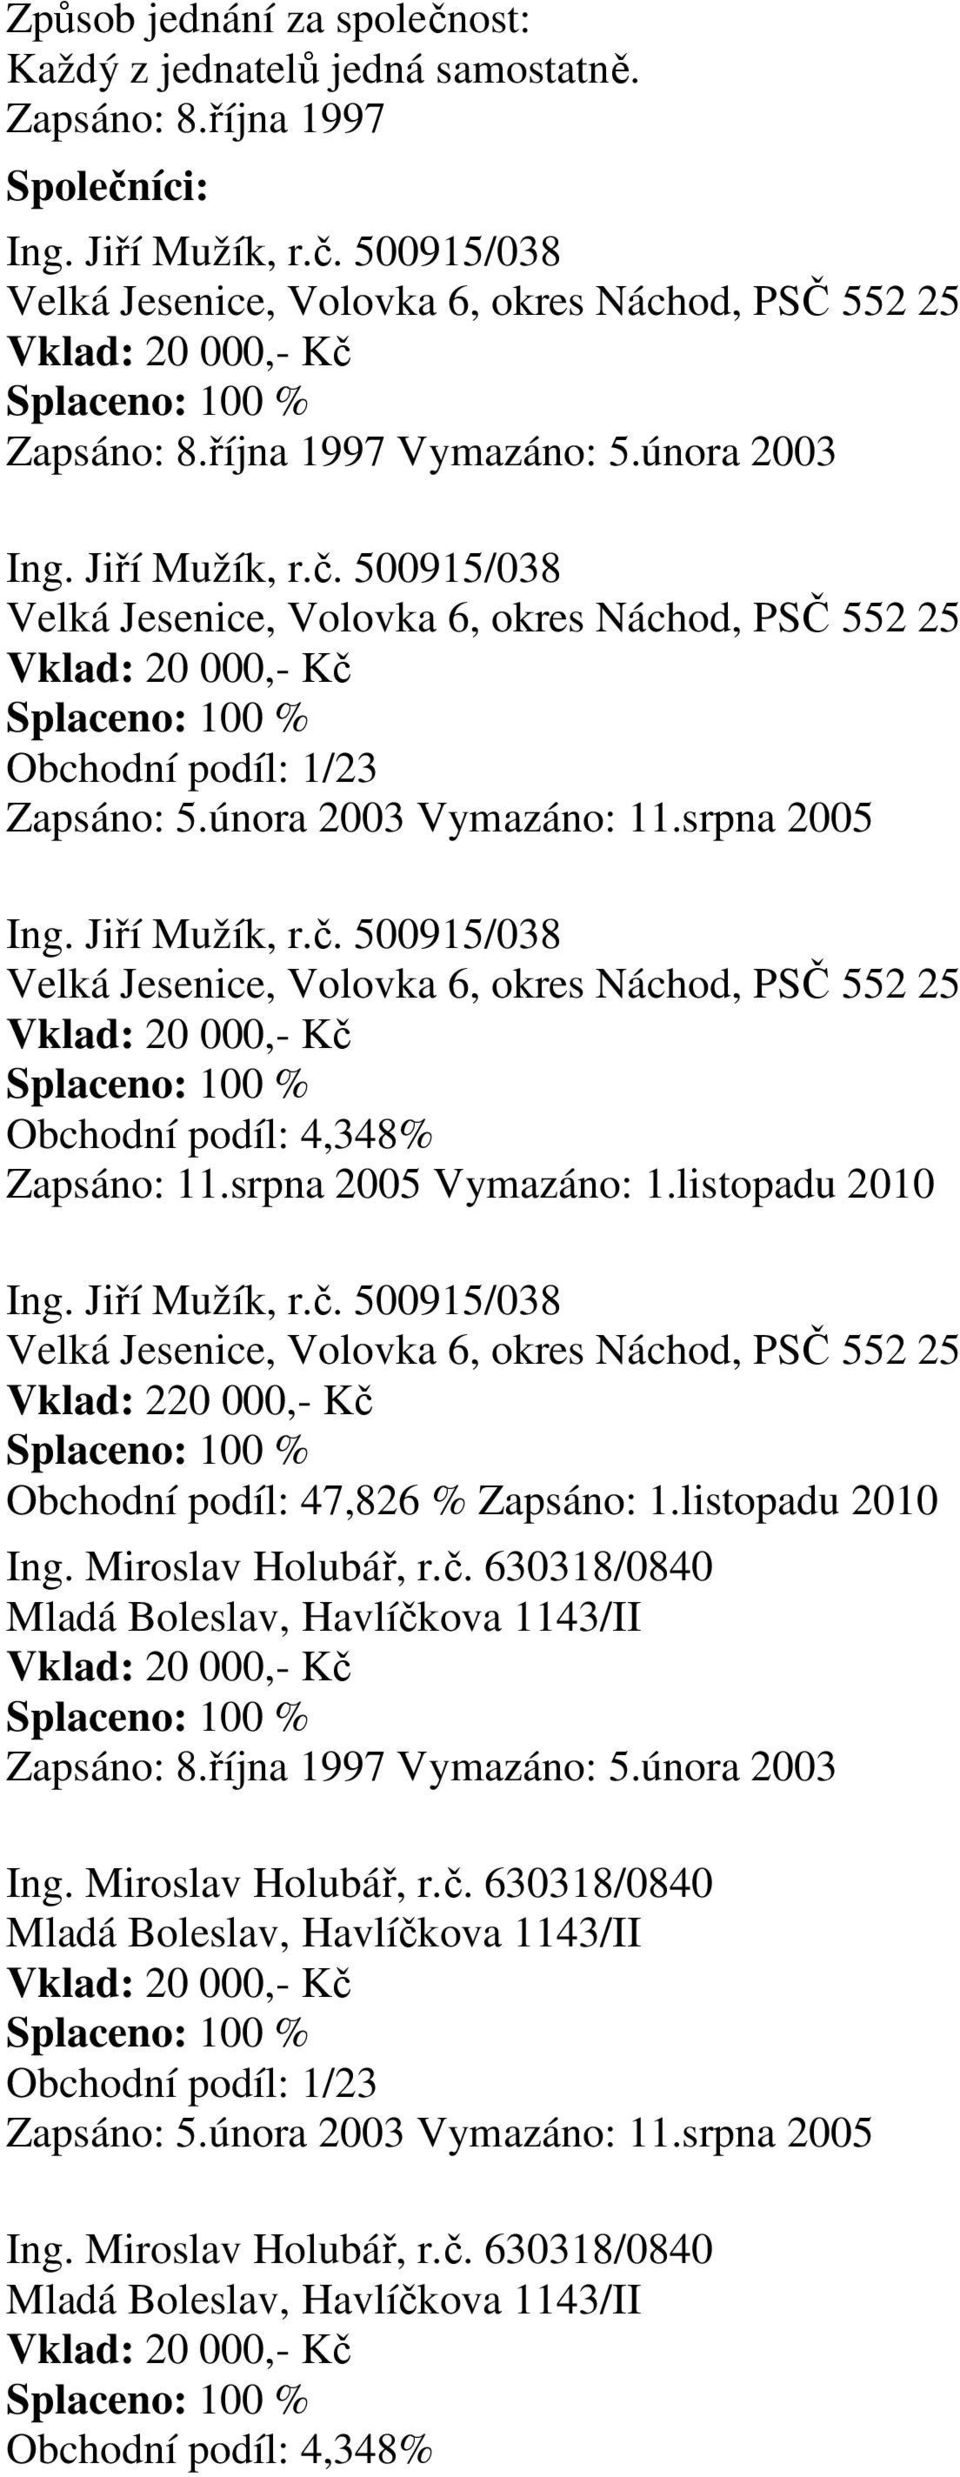 listopadu 2010 Ing. Miroslav Holubář, r.č. 630318/0840 Mladá Boleslav, Havlíčkova 1143/II 